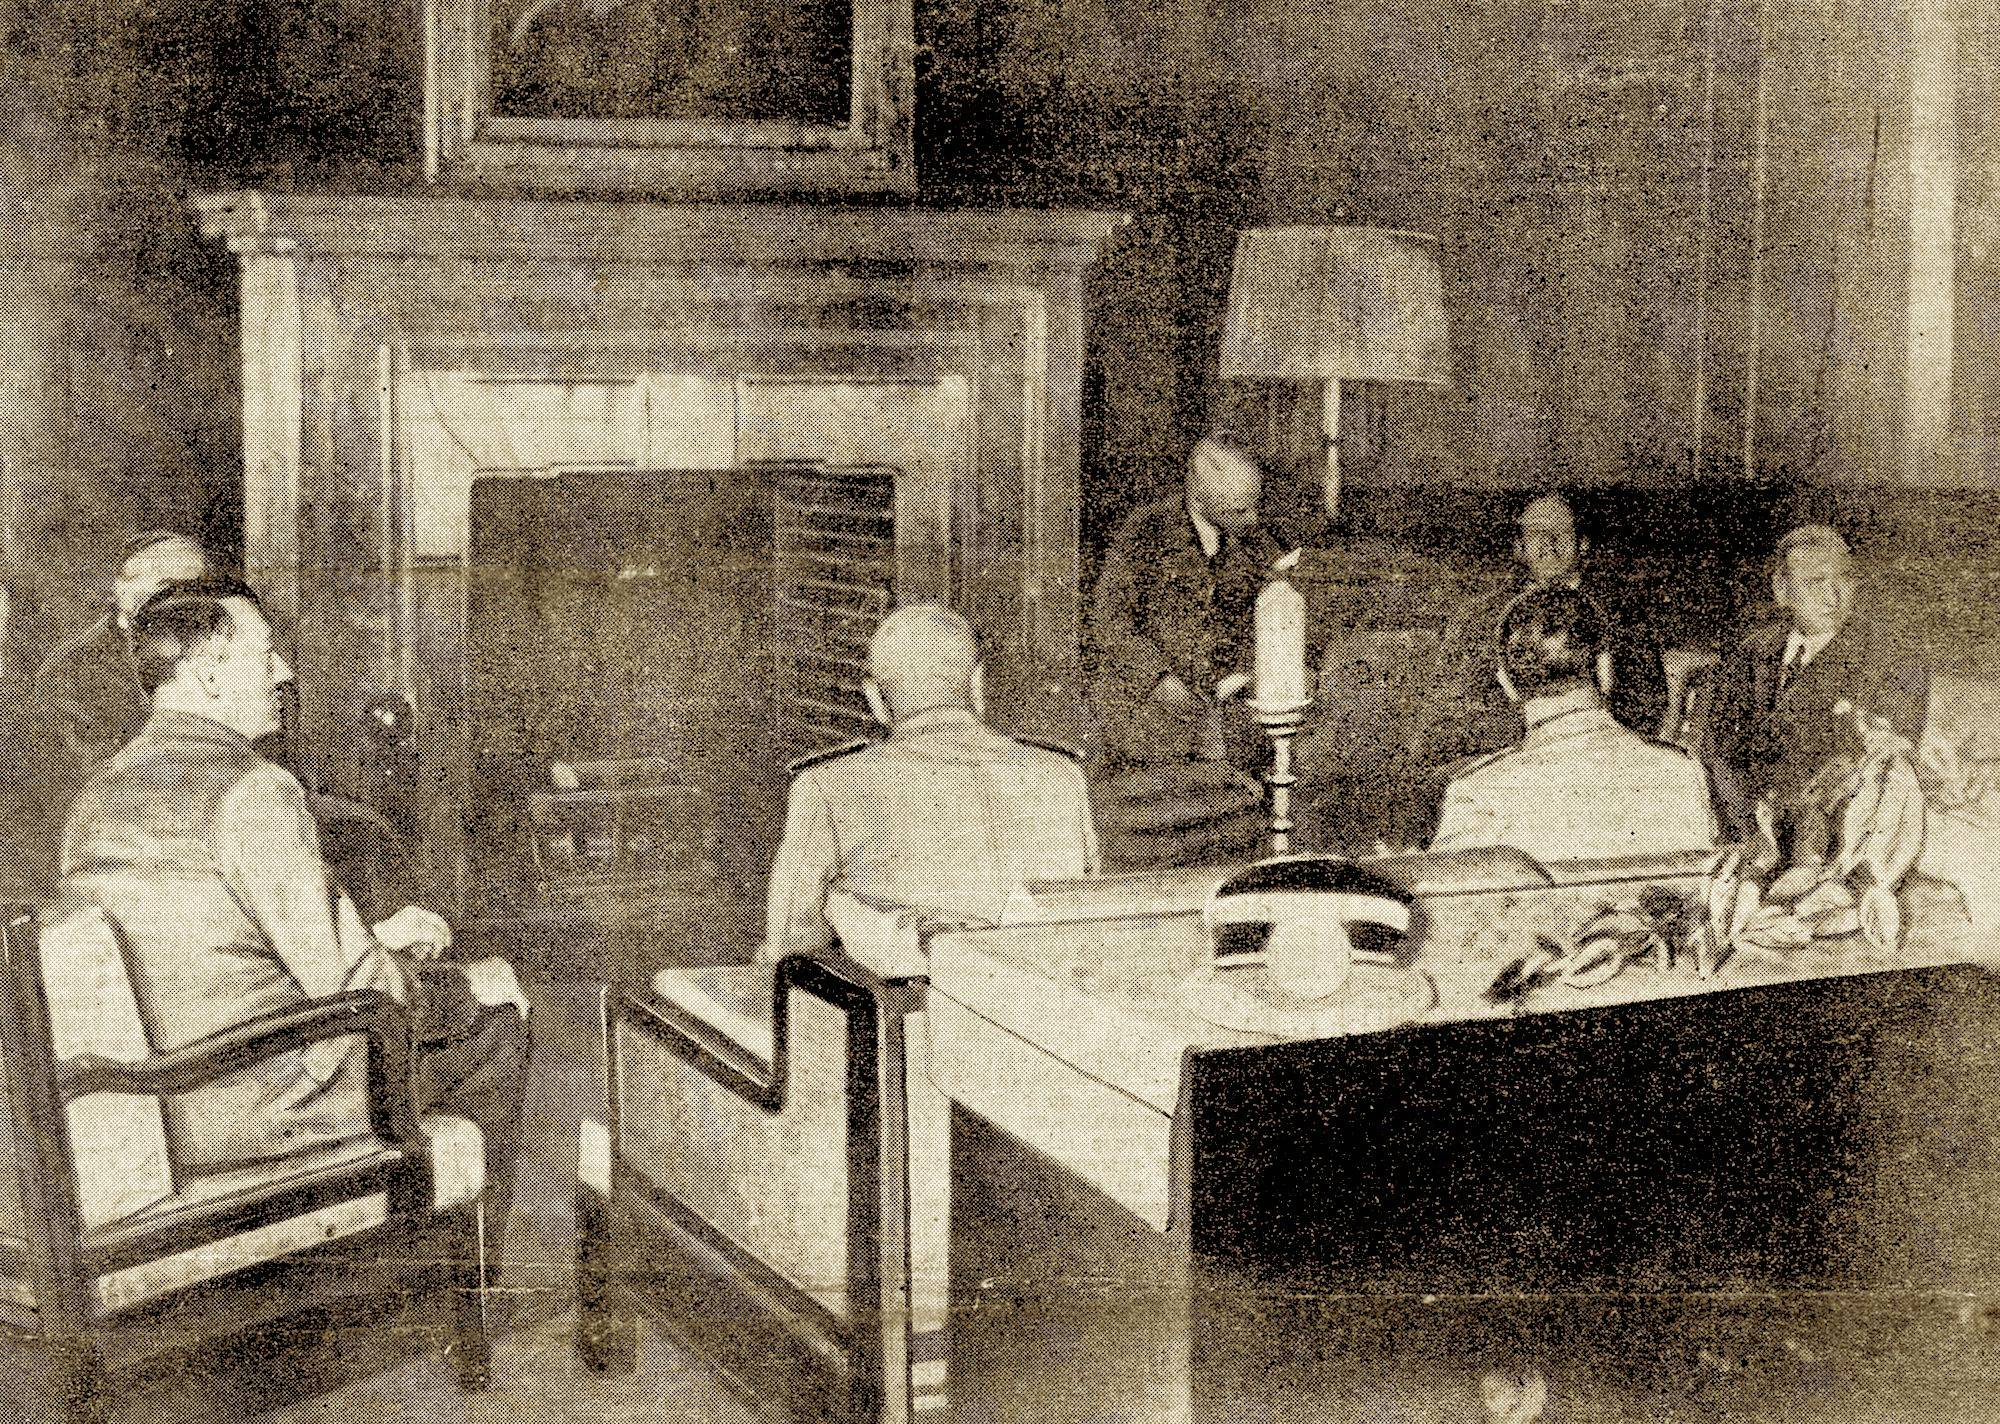 « De gauche à droite MM. Chamberlain (à moitié caché par le Führer), Hitler, Mussolini, Ciano, Daladier, von Ribbentrop et Schmidt (interprète) », Le Journal, 30 septembre 1938 - source : Gallica-BnF